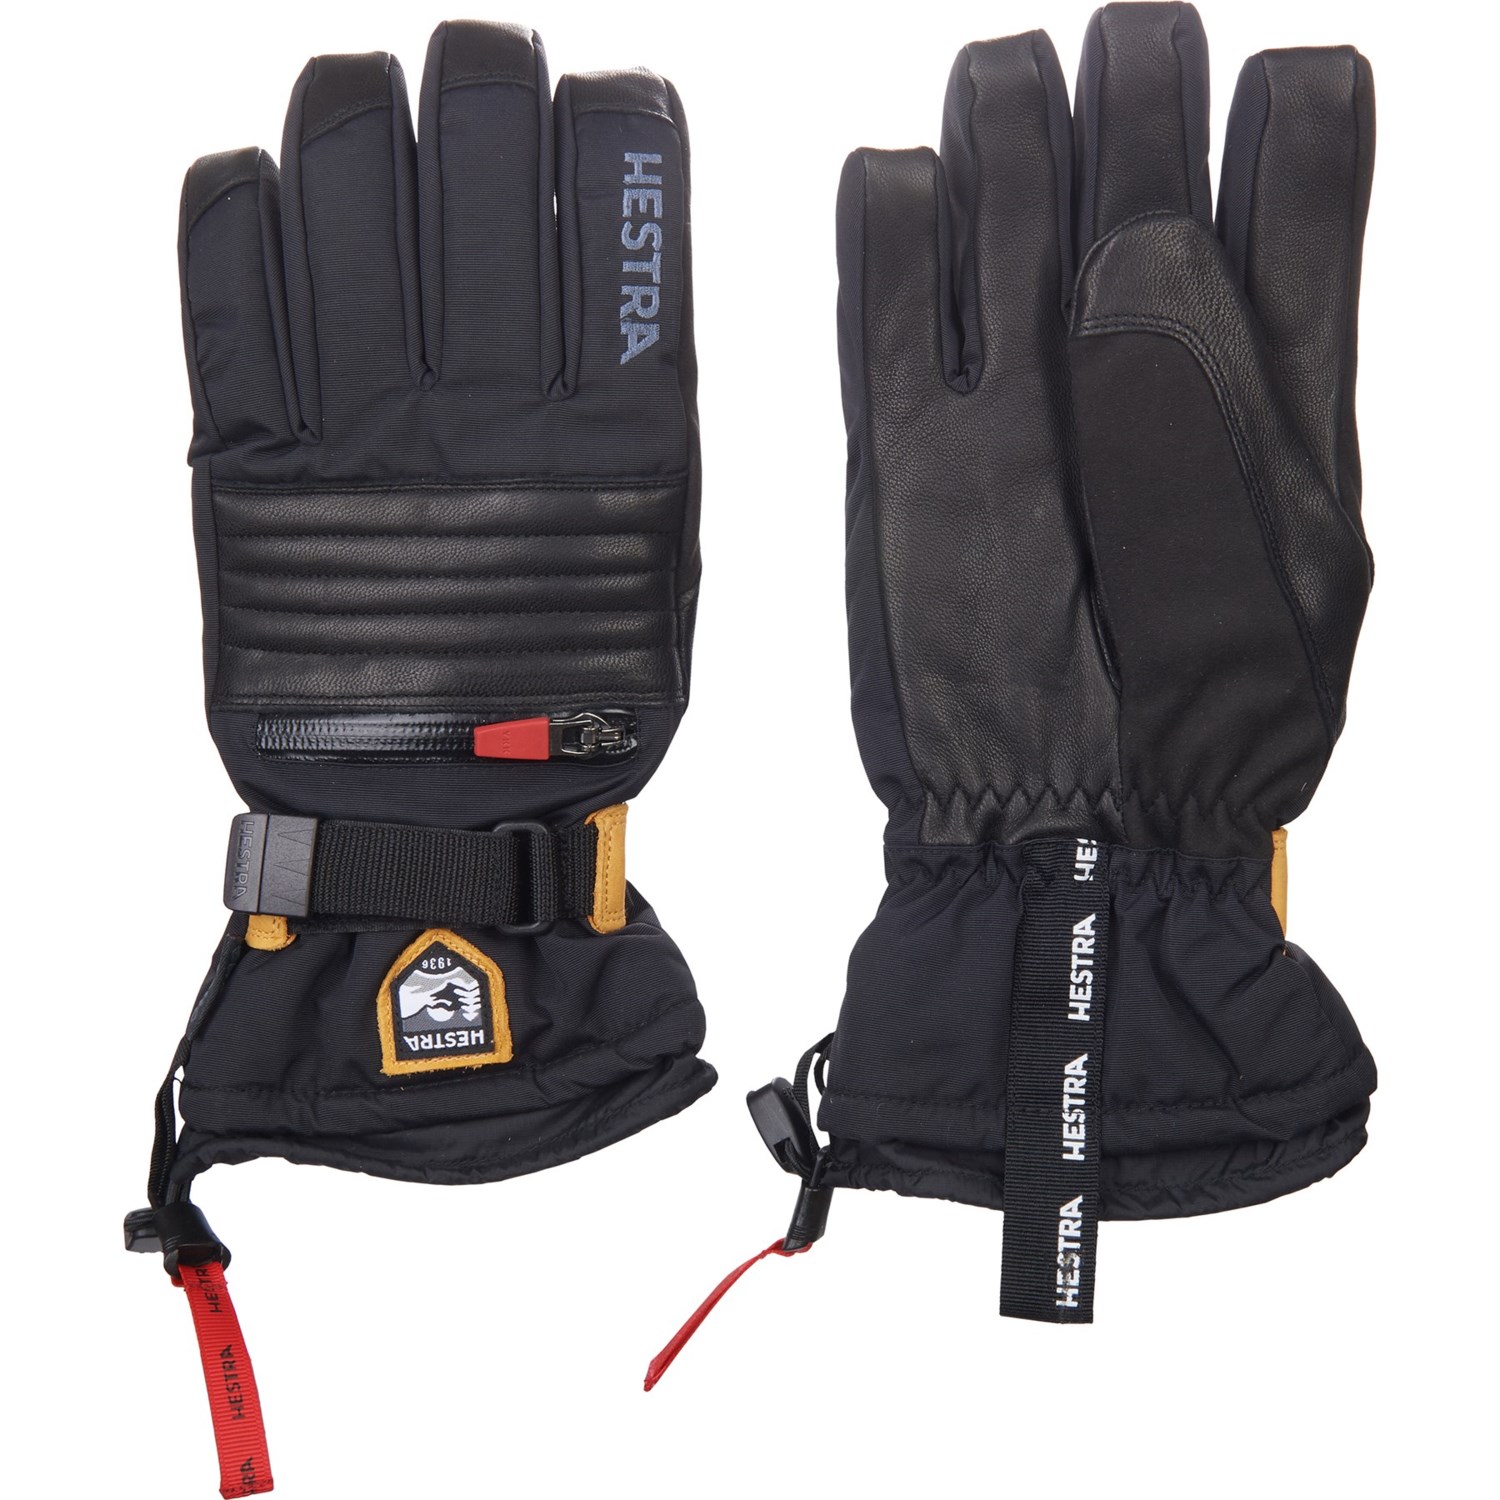 leather ski gloves for men